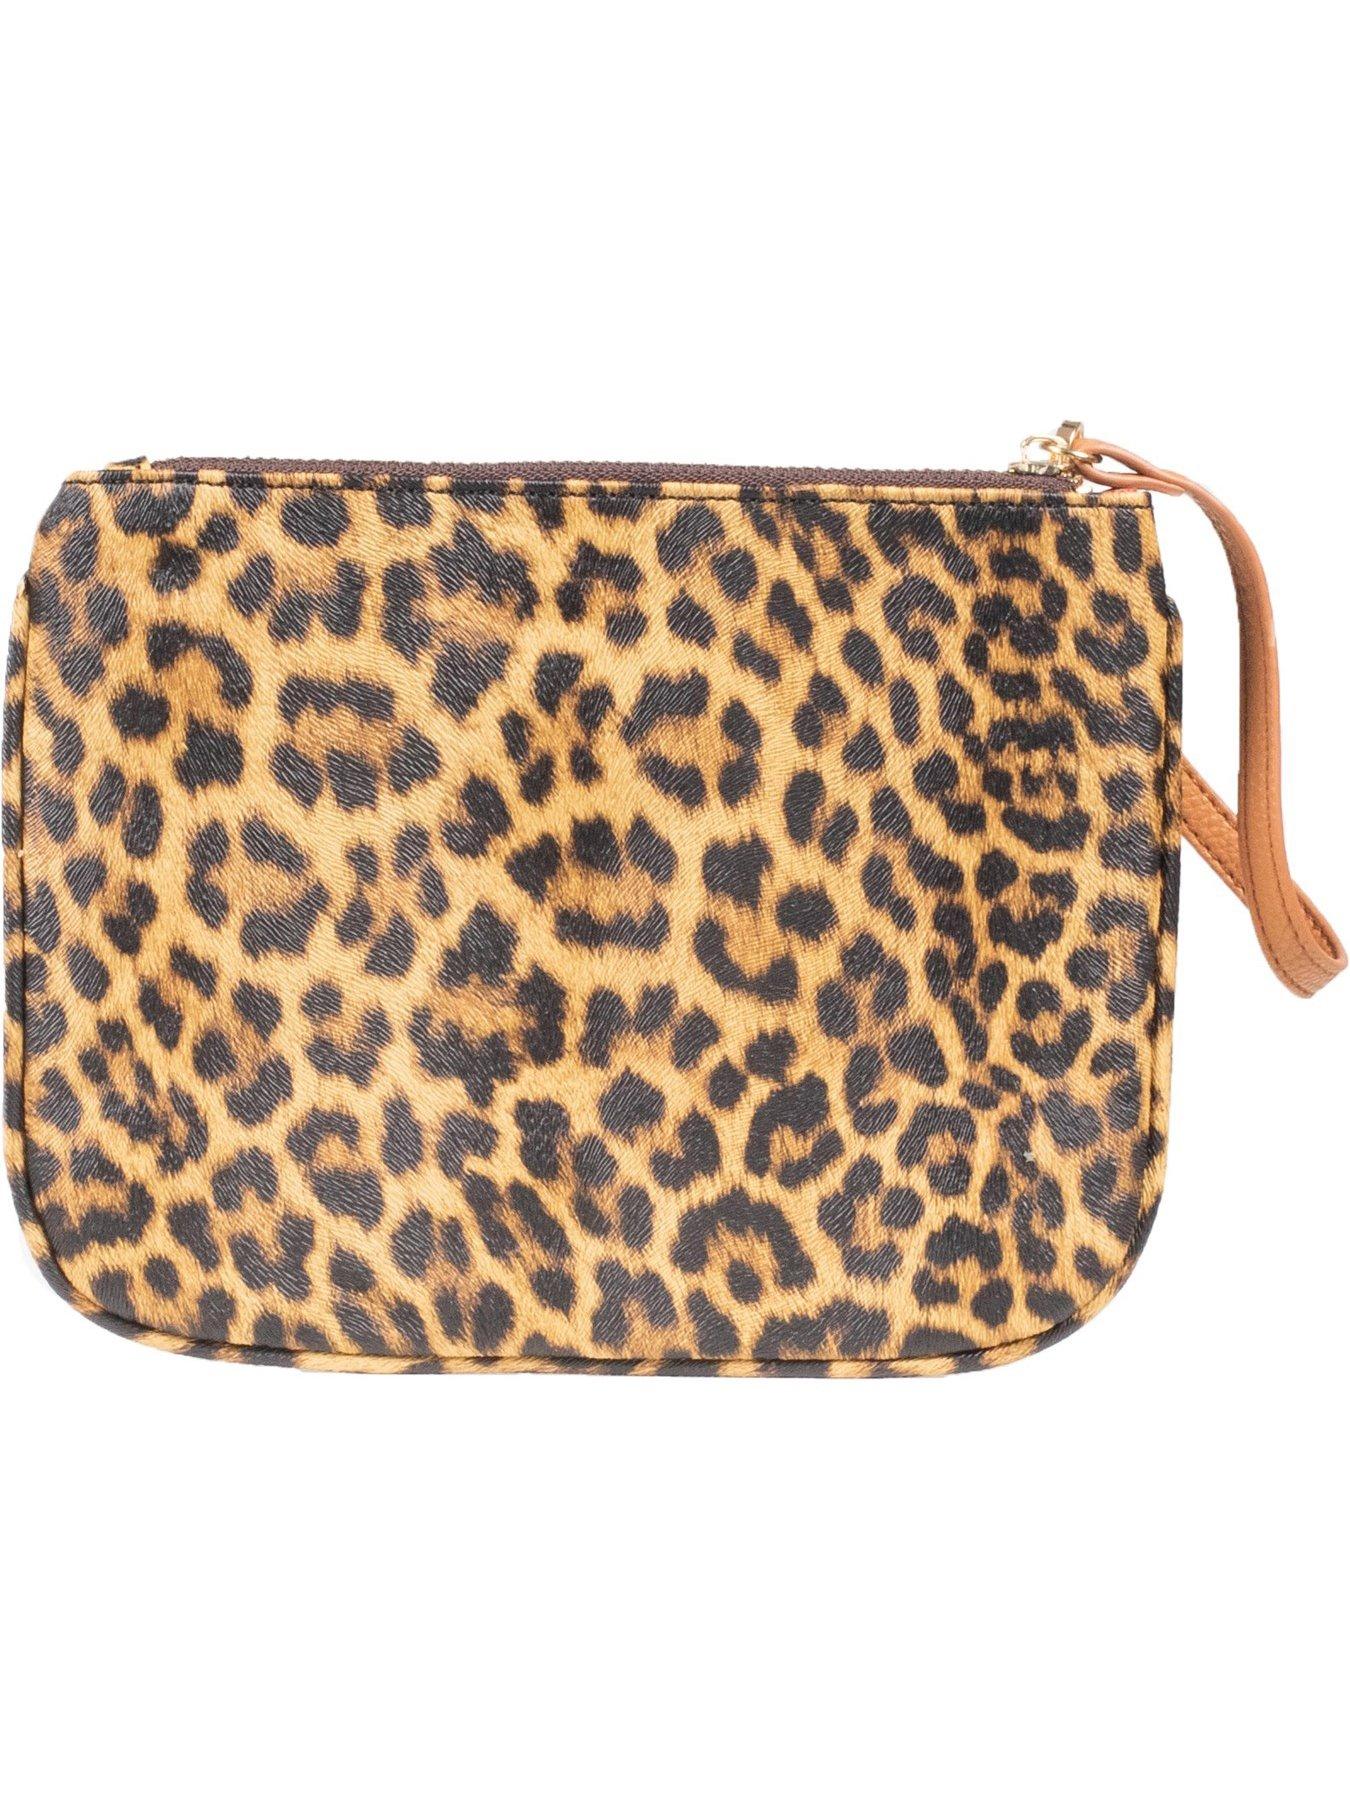 Bags & Purses Sadie Leopard Tote Bag - Brown